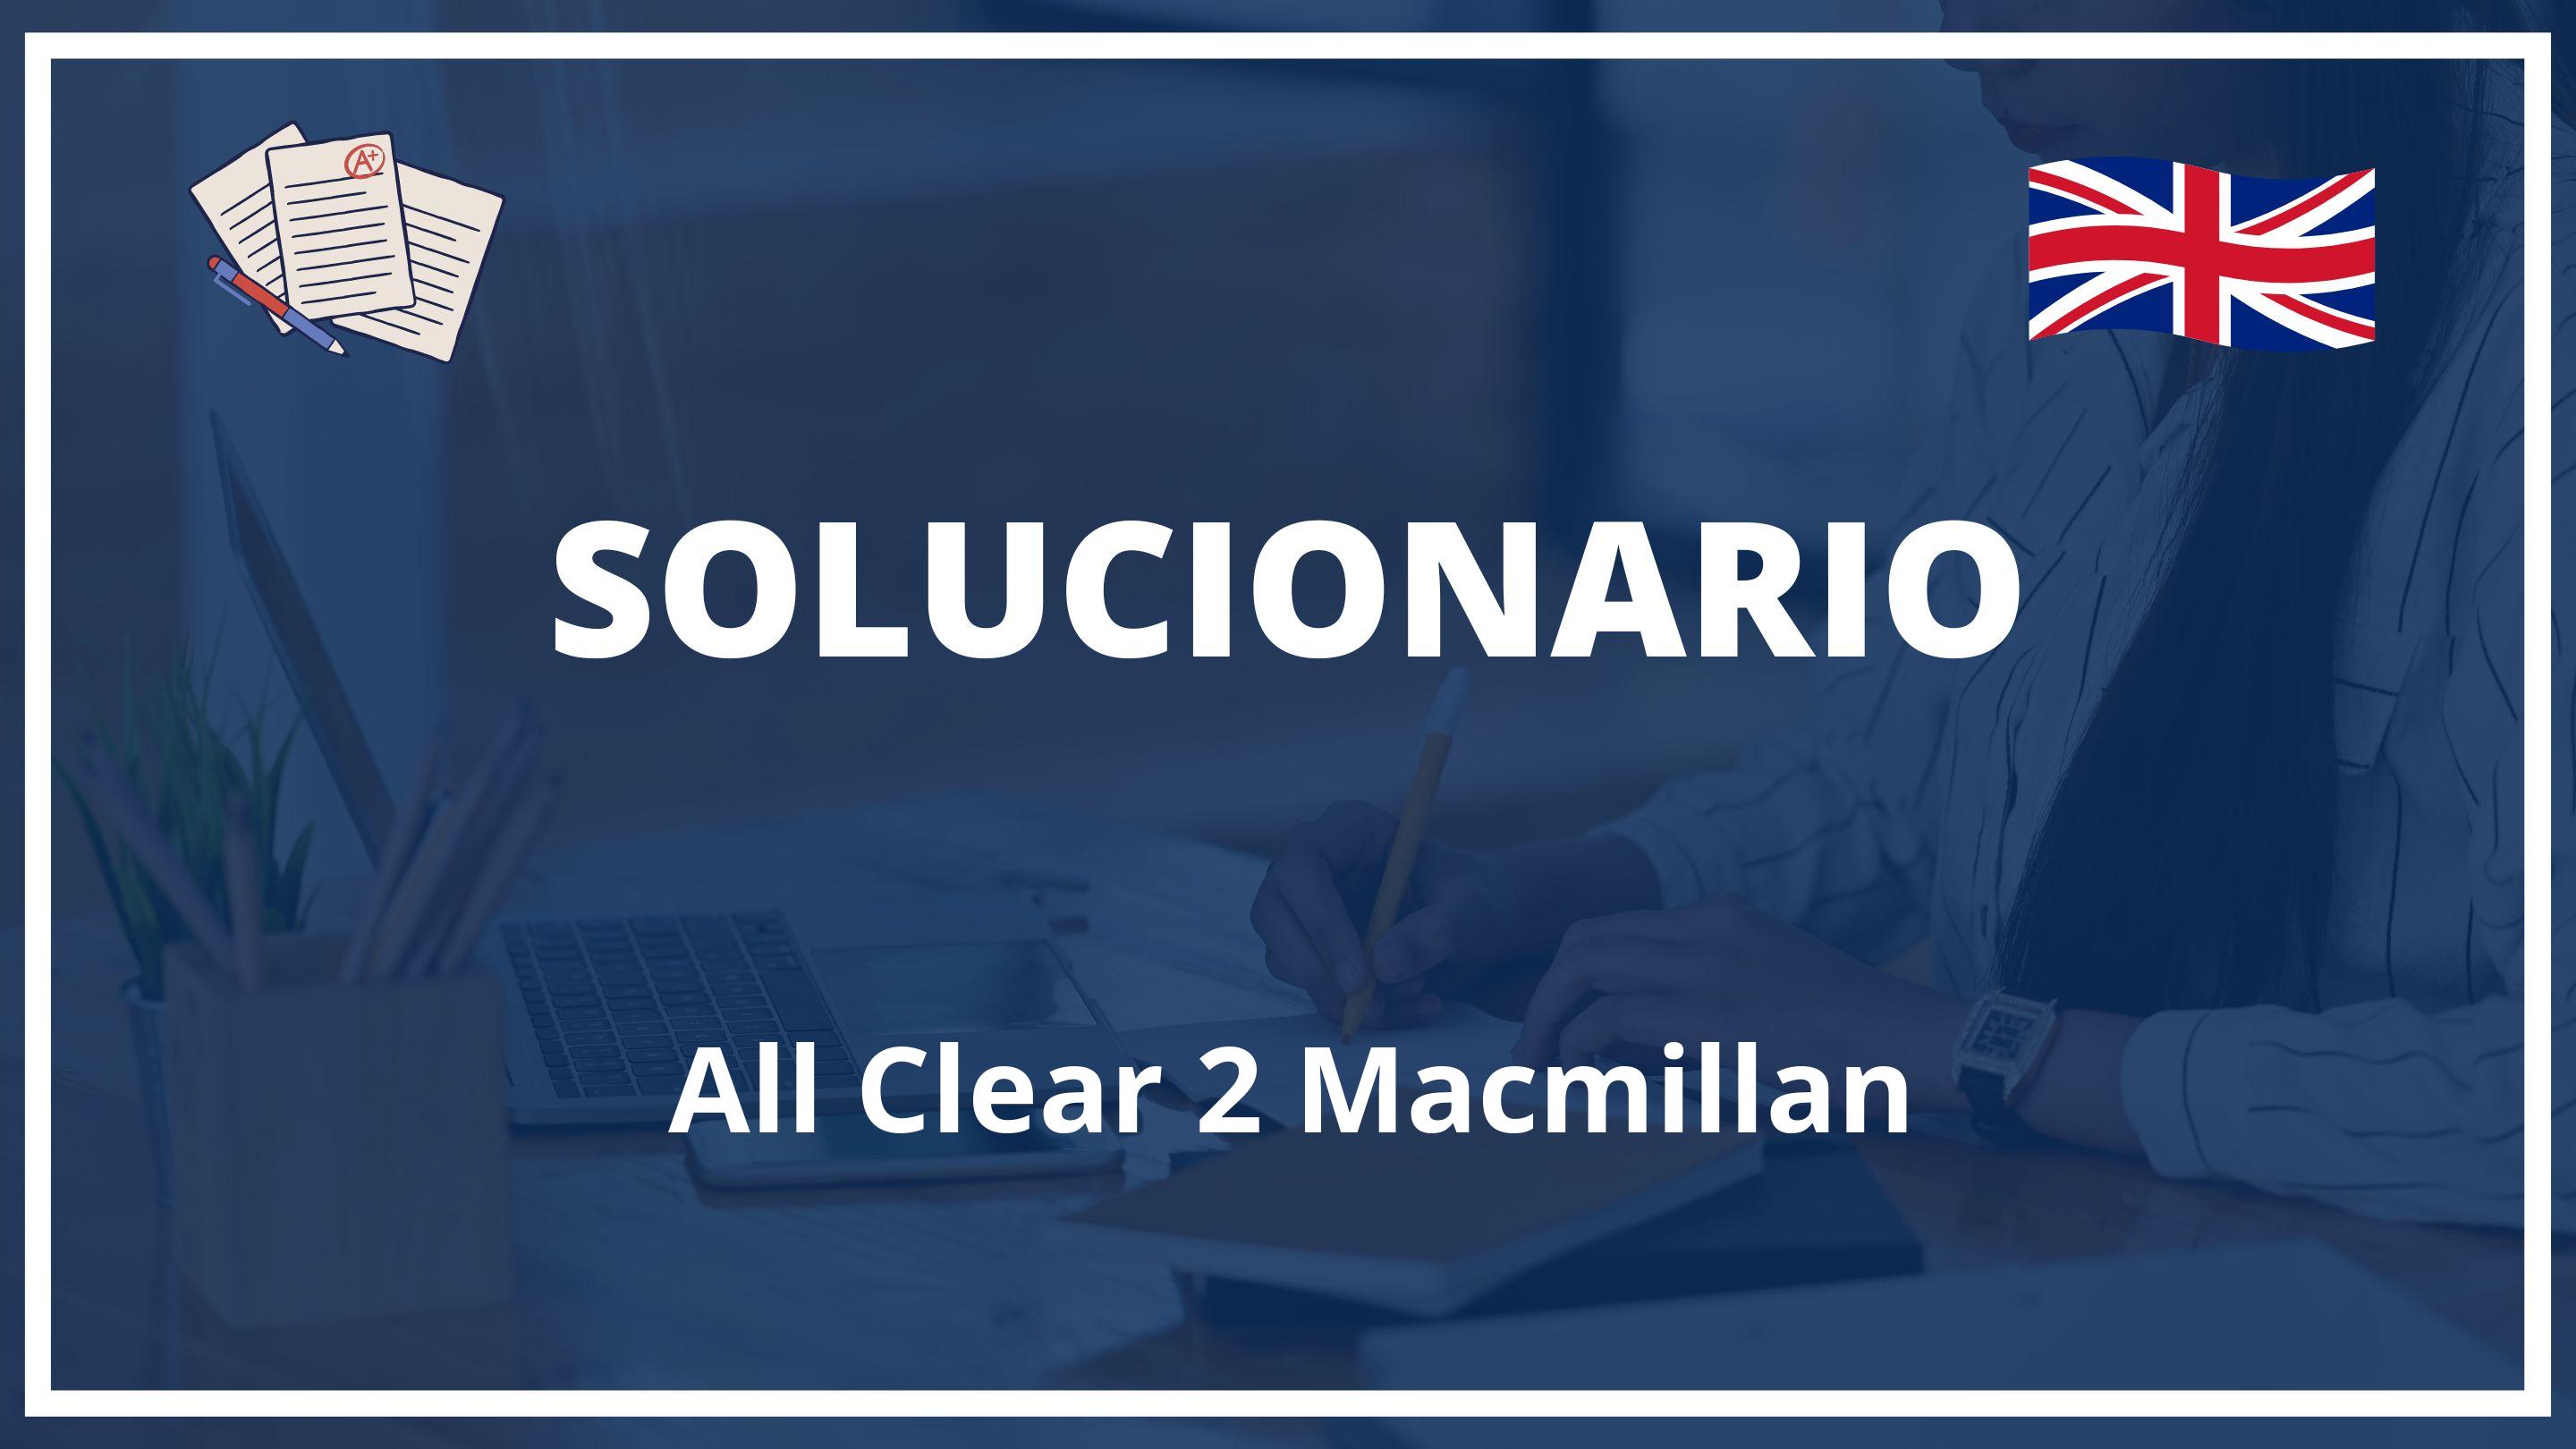 All Clear 2 Macmillan